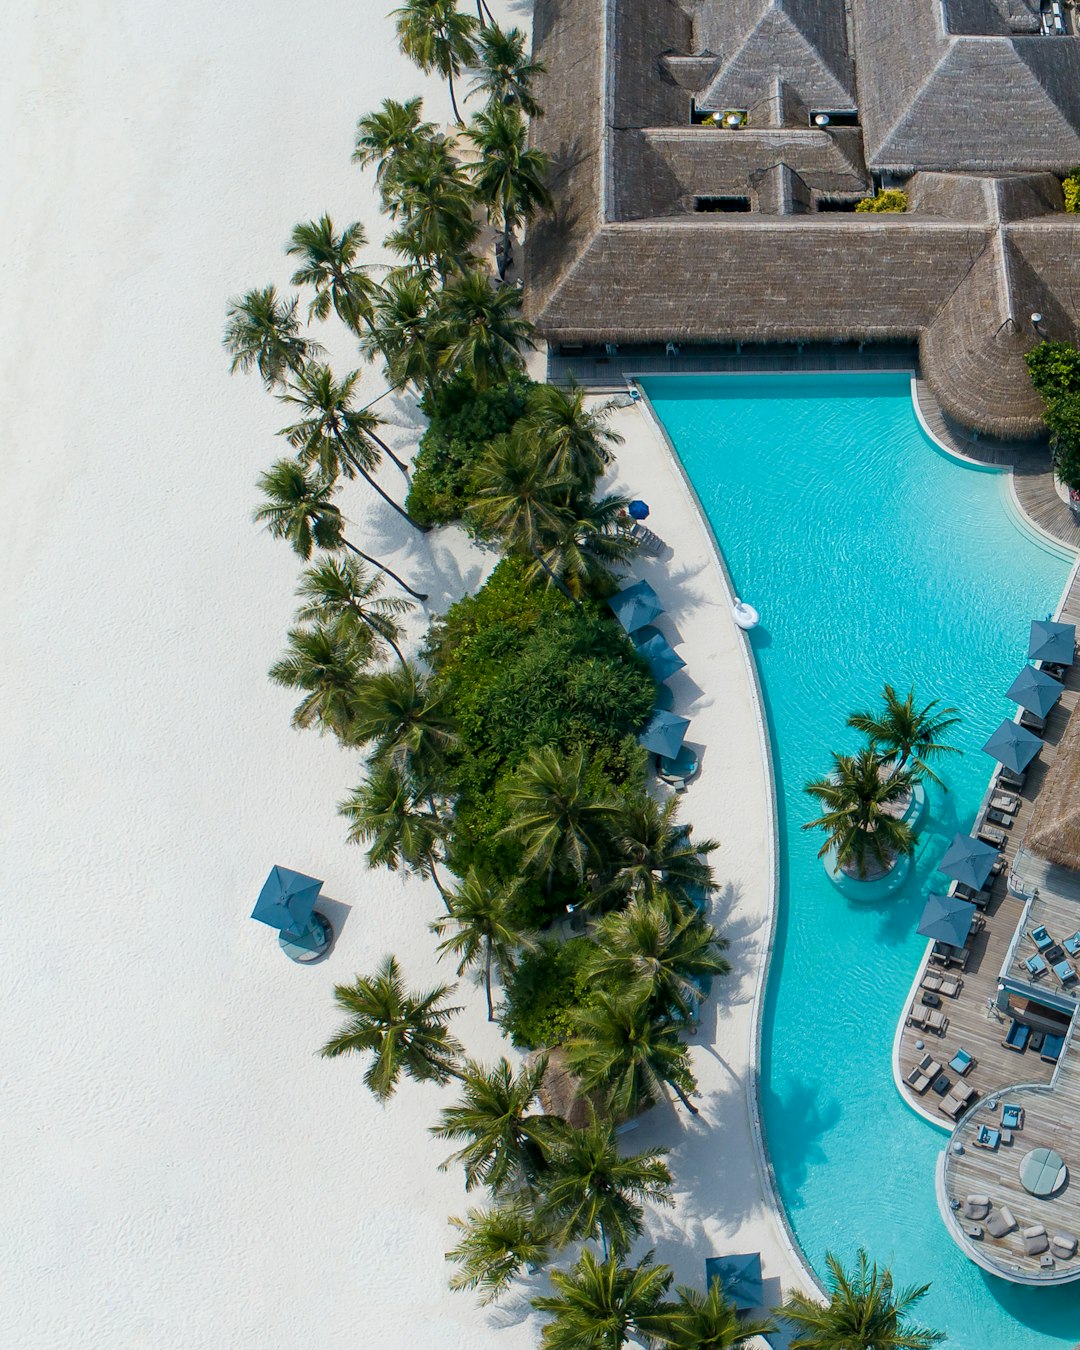 Swimming pool photo spot ĞšĞ°Ğ½Ğ¸Ñ„ÑƒÑˆĞ¸ Maldives